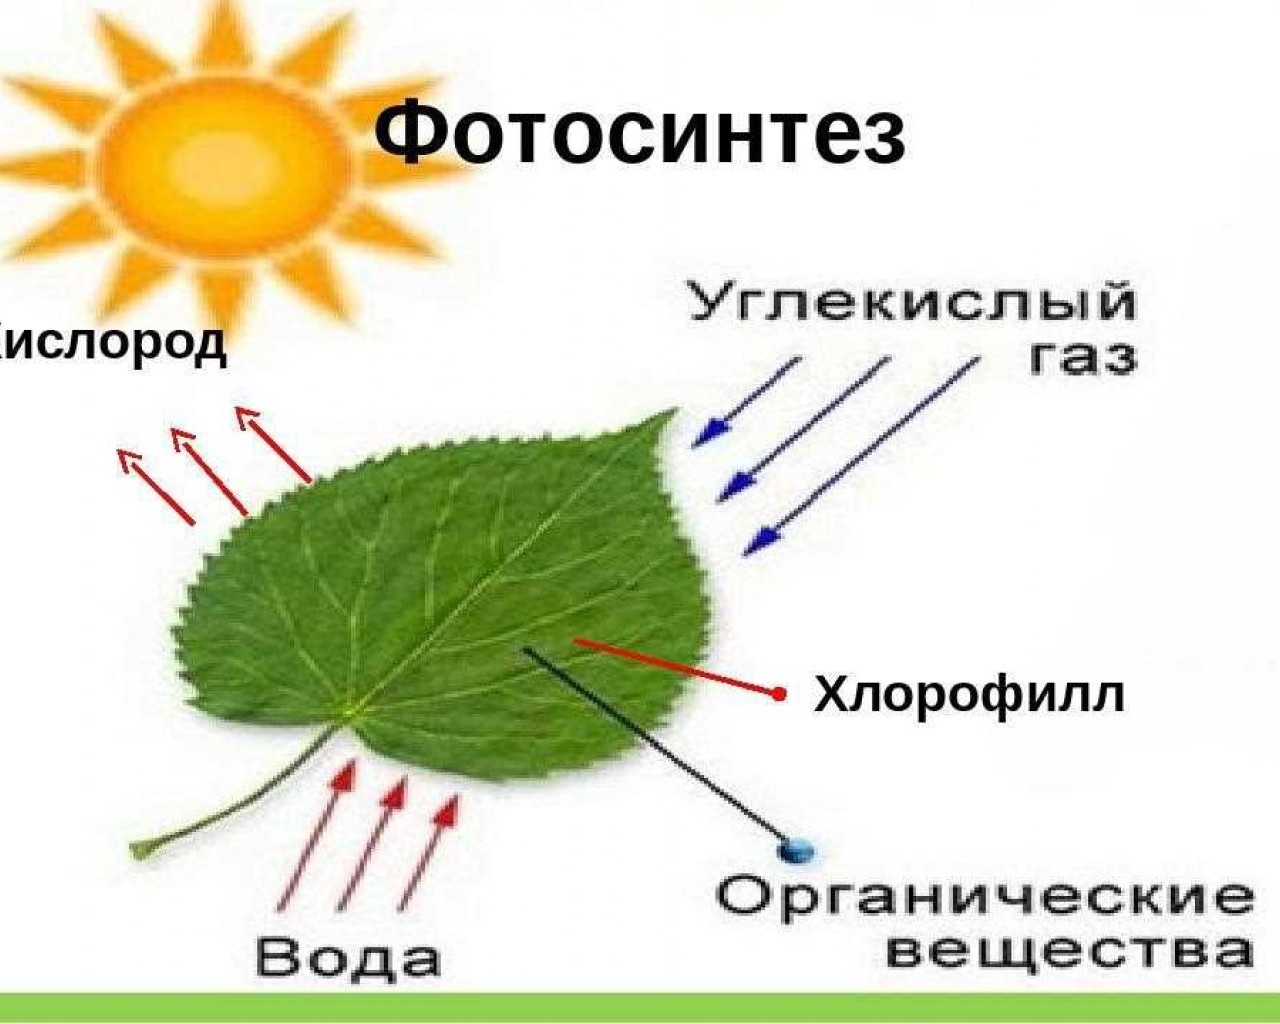 Фотосинтез - природный процесс, обеспечивающий жизнь на планете Земля